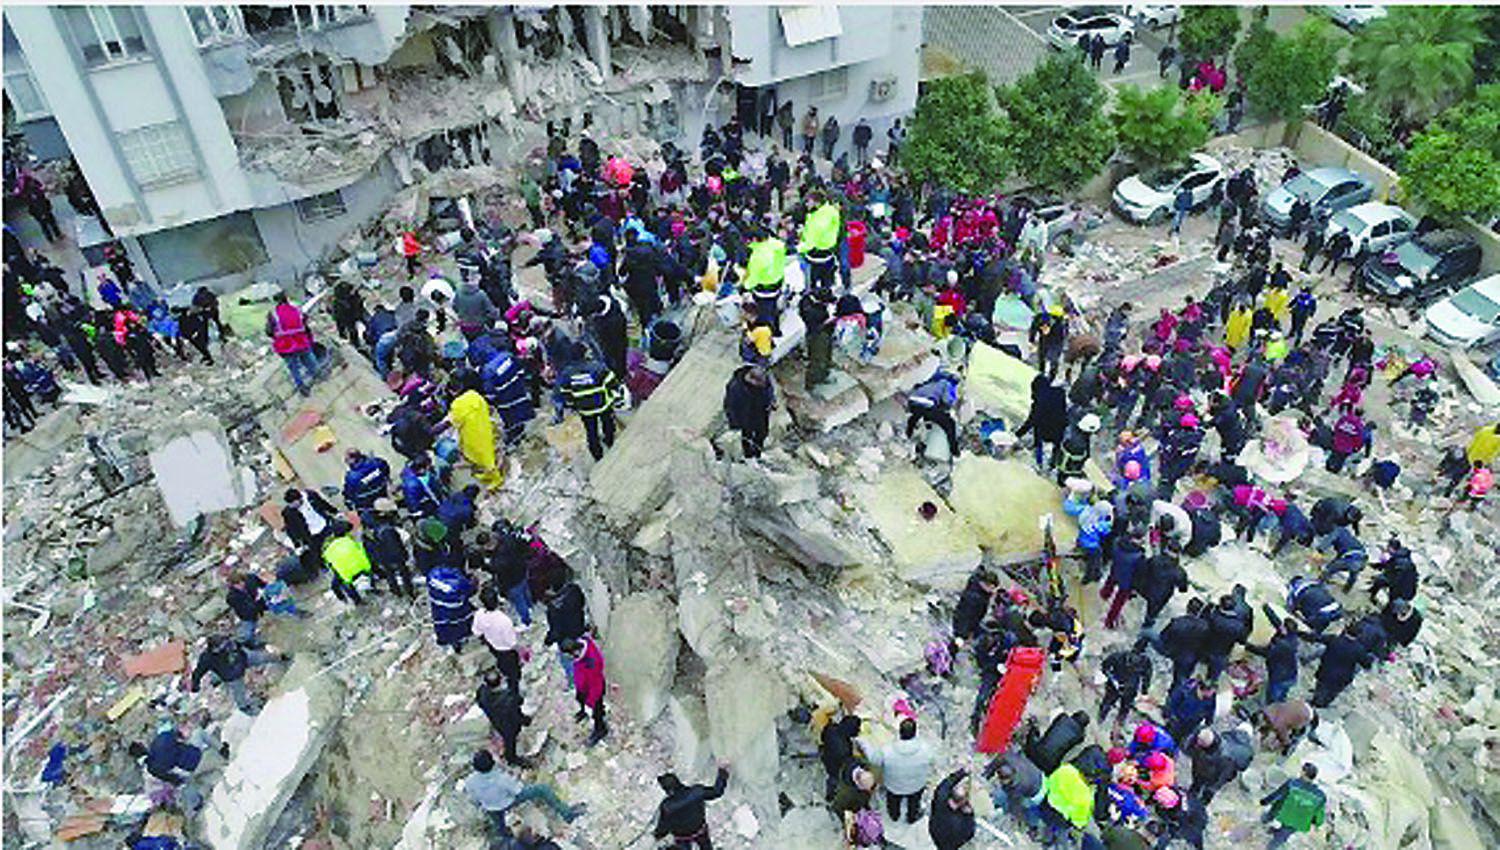 Maacutes de 3800 muertos tras terremoto en Turquiacutea y Siria y el mal clima complica las tareas rescate